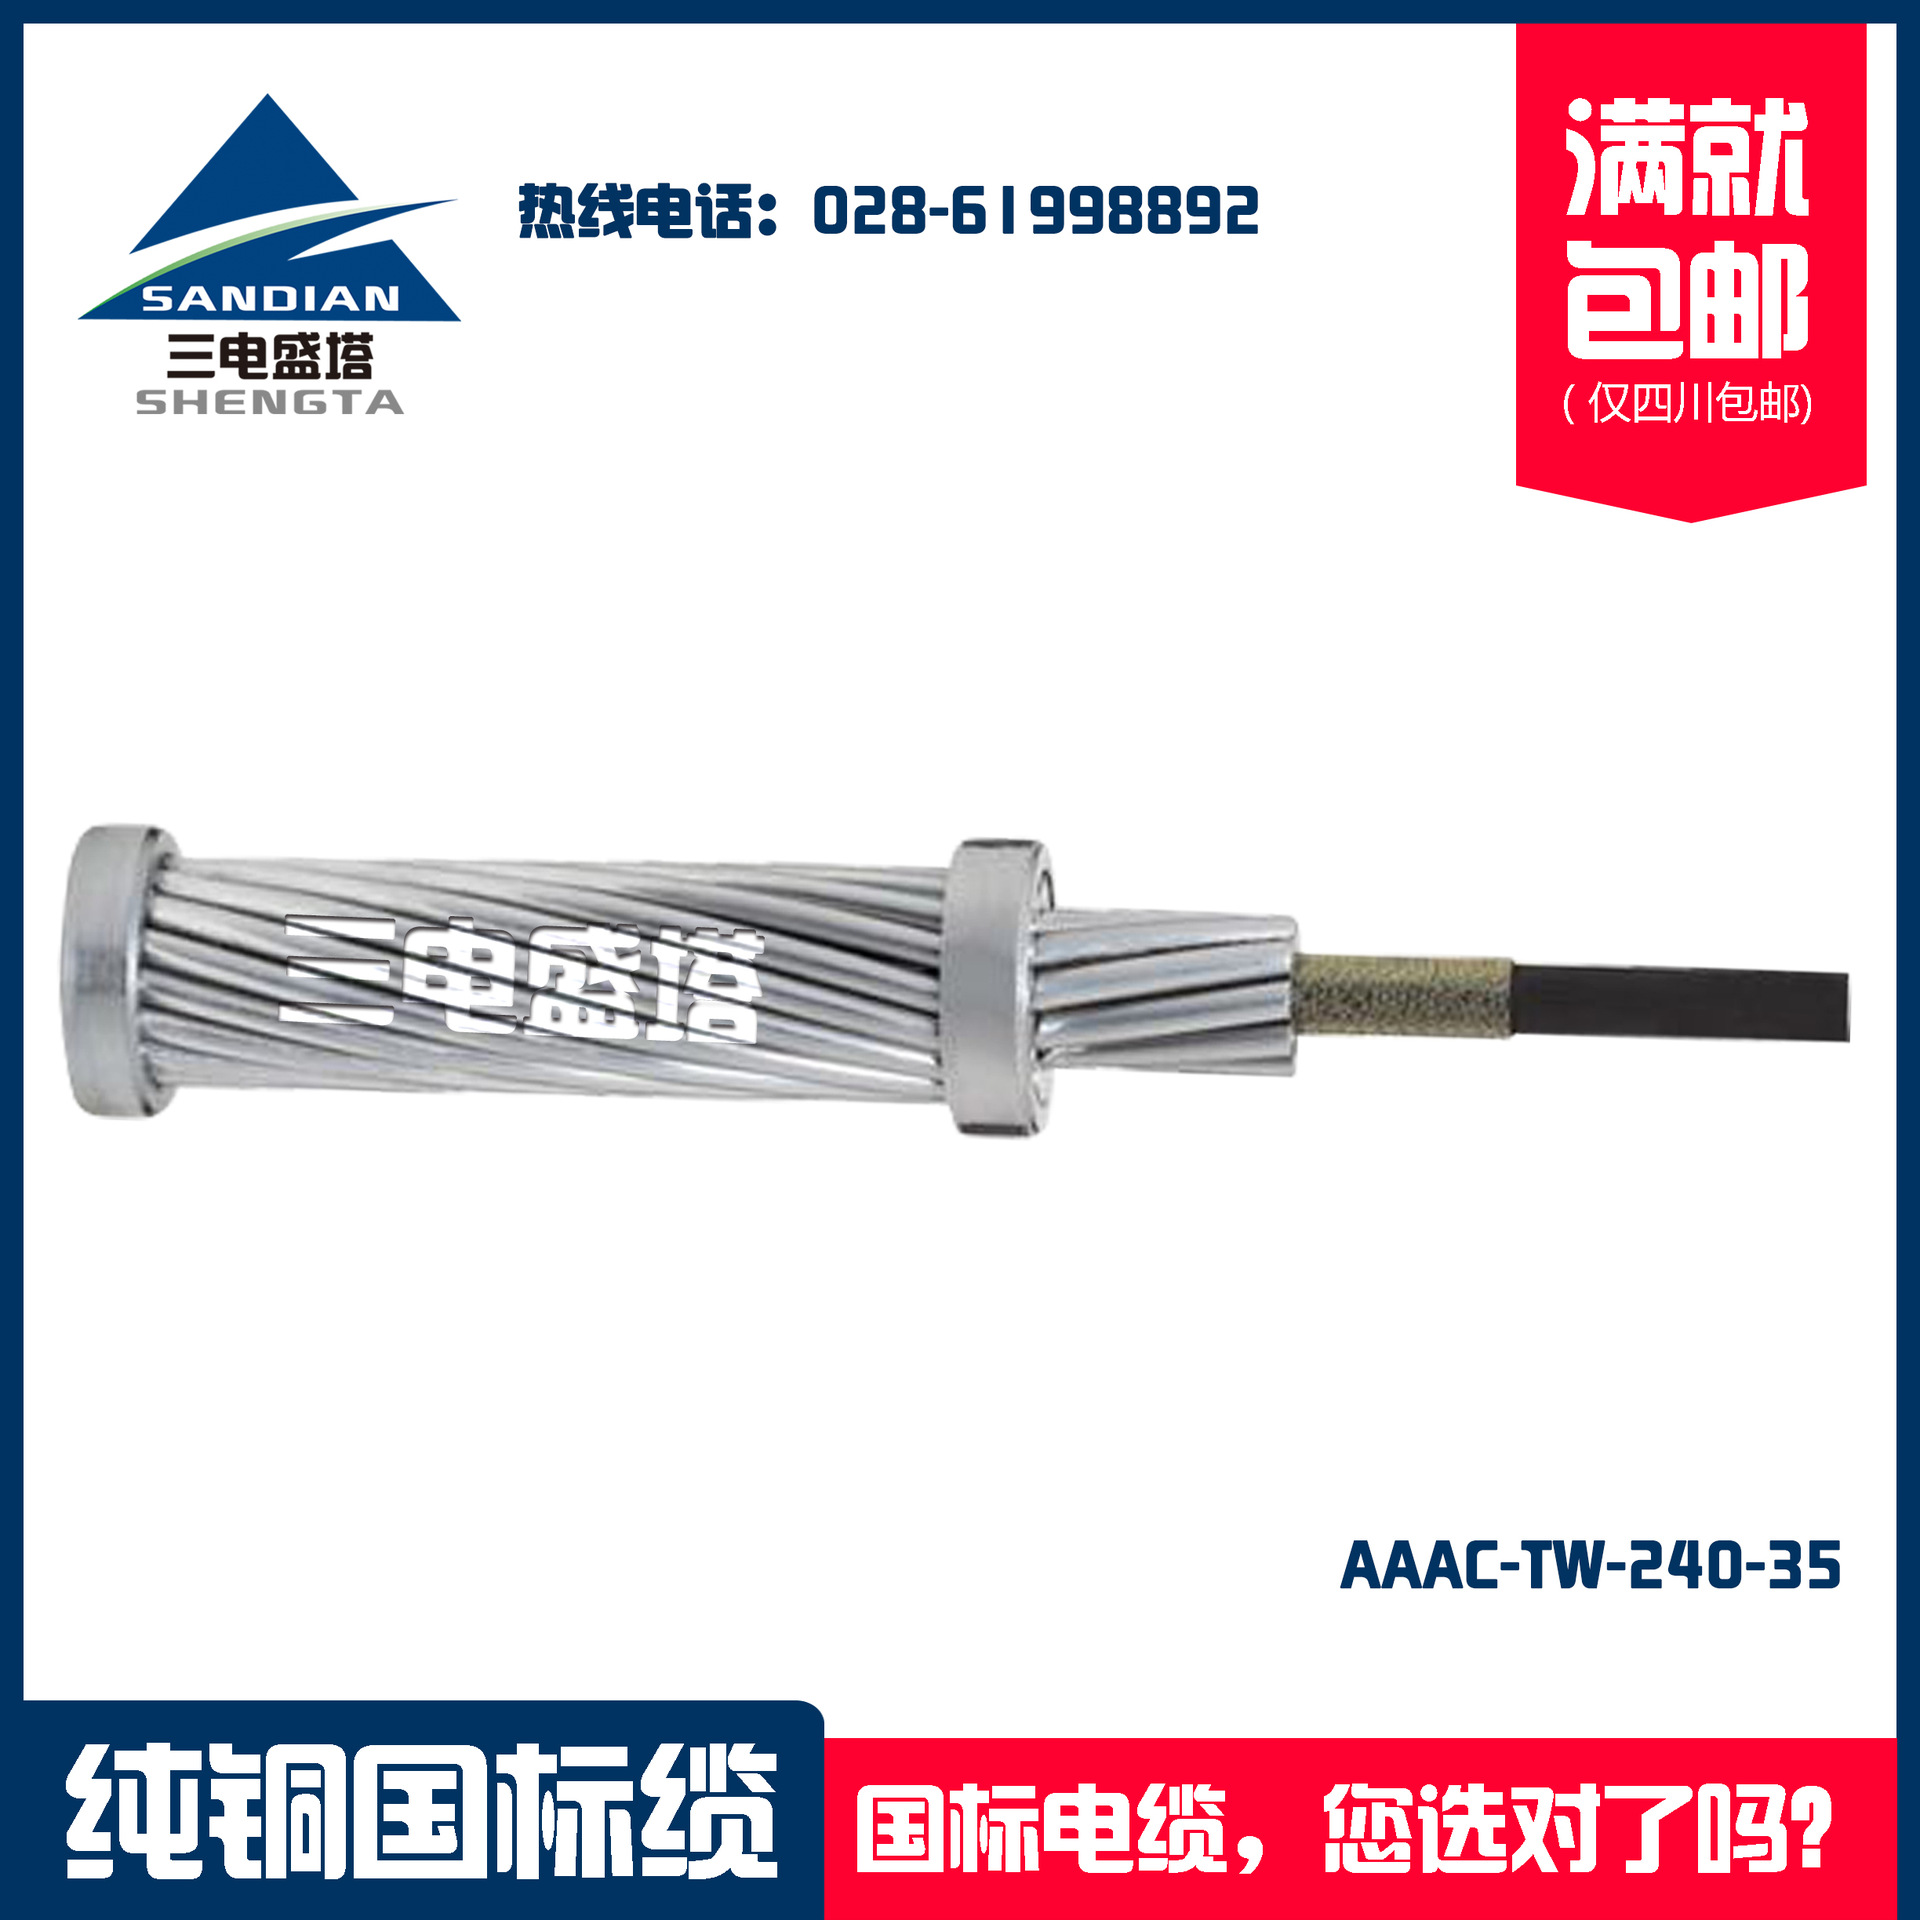 三电盛塔 铝合金导体架空电缆 AAAC-TW-240-35